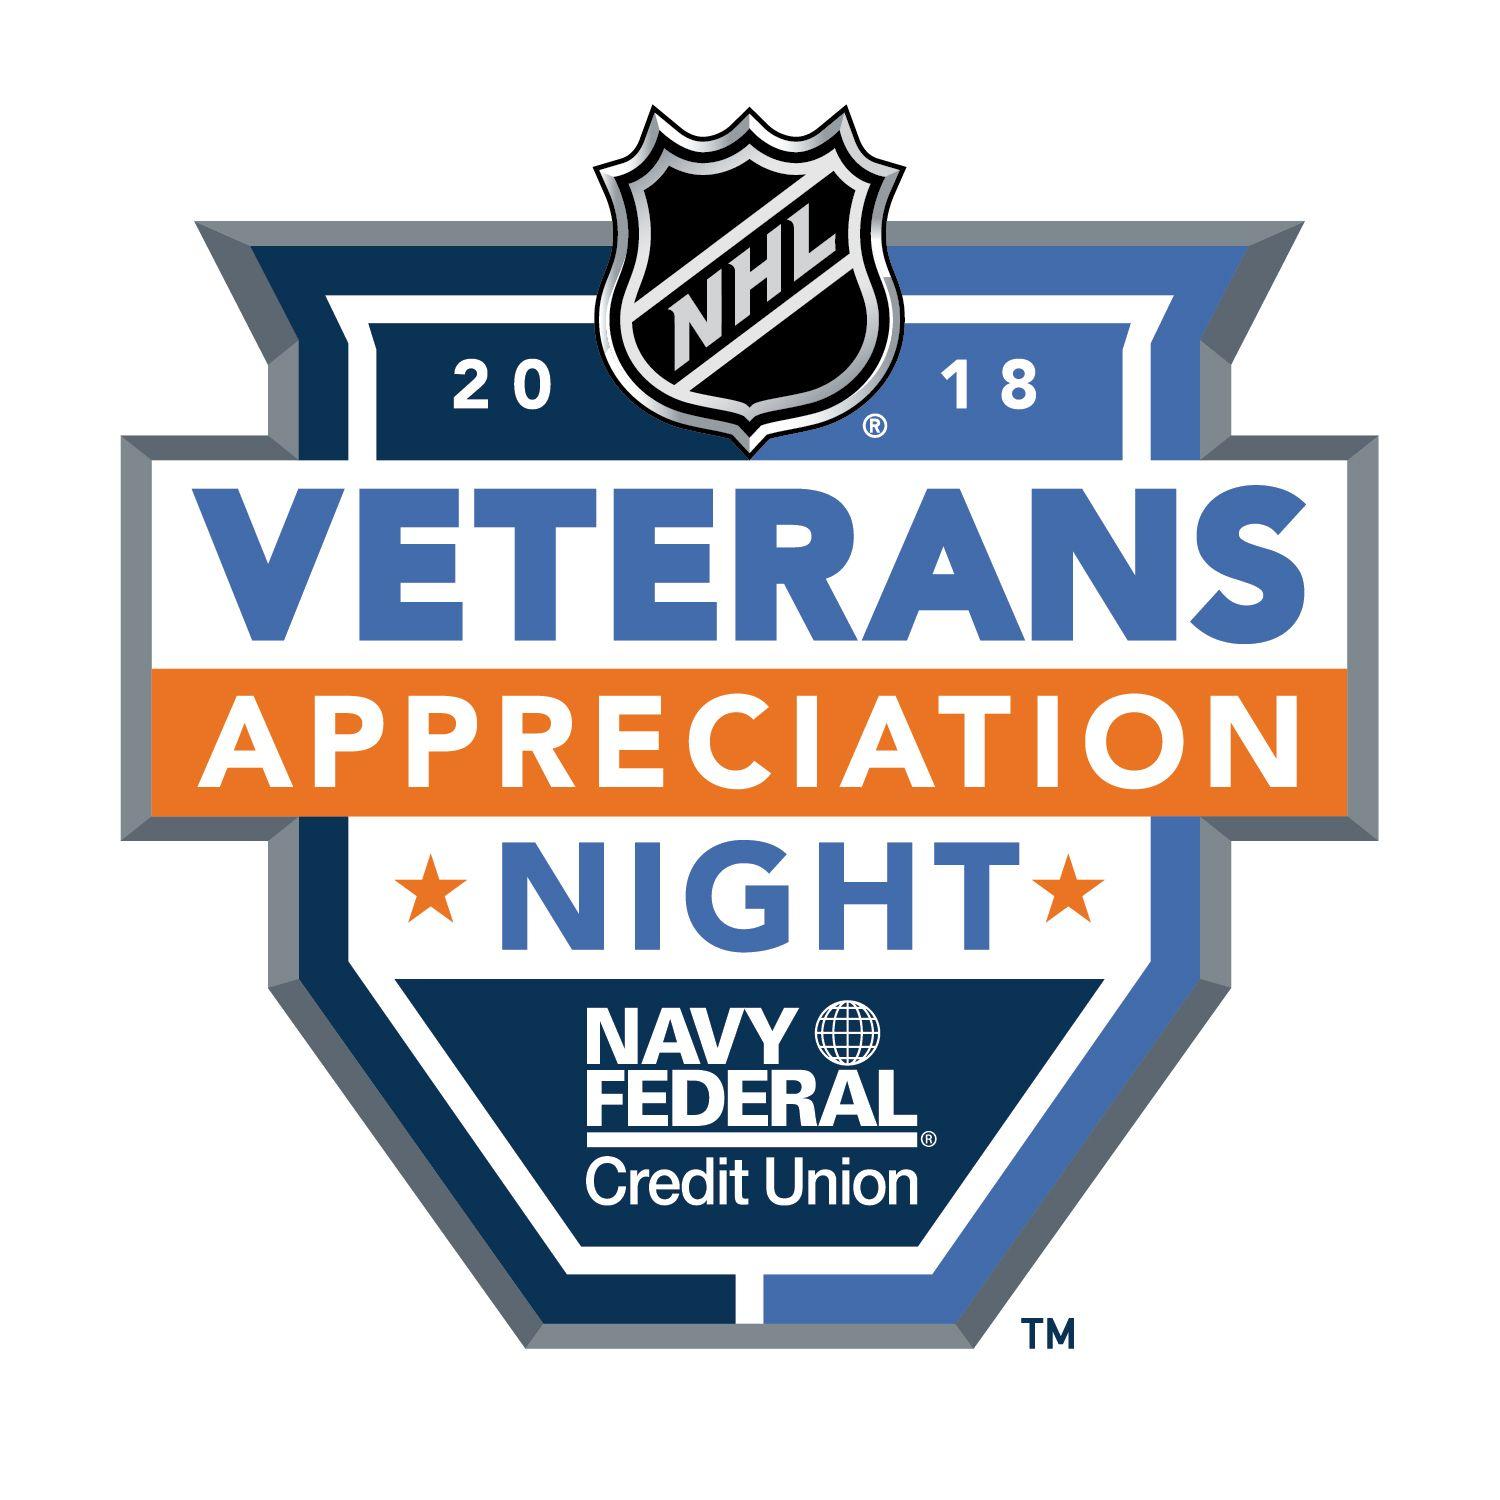 NHL.com Logo - NHL announces official military appreciation partner